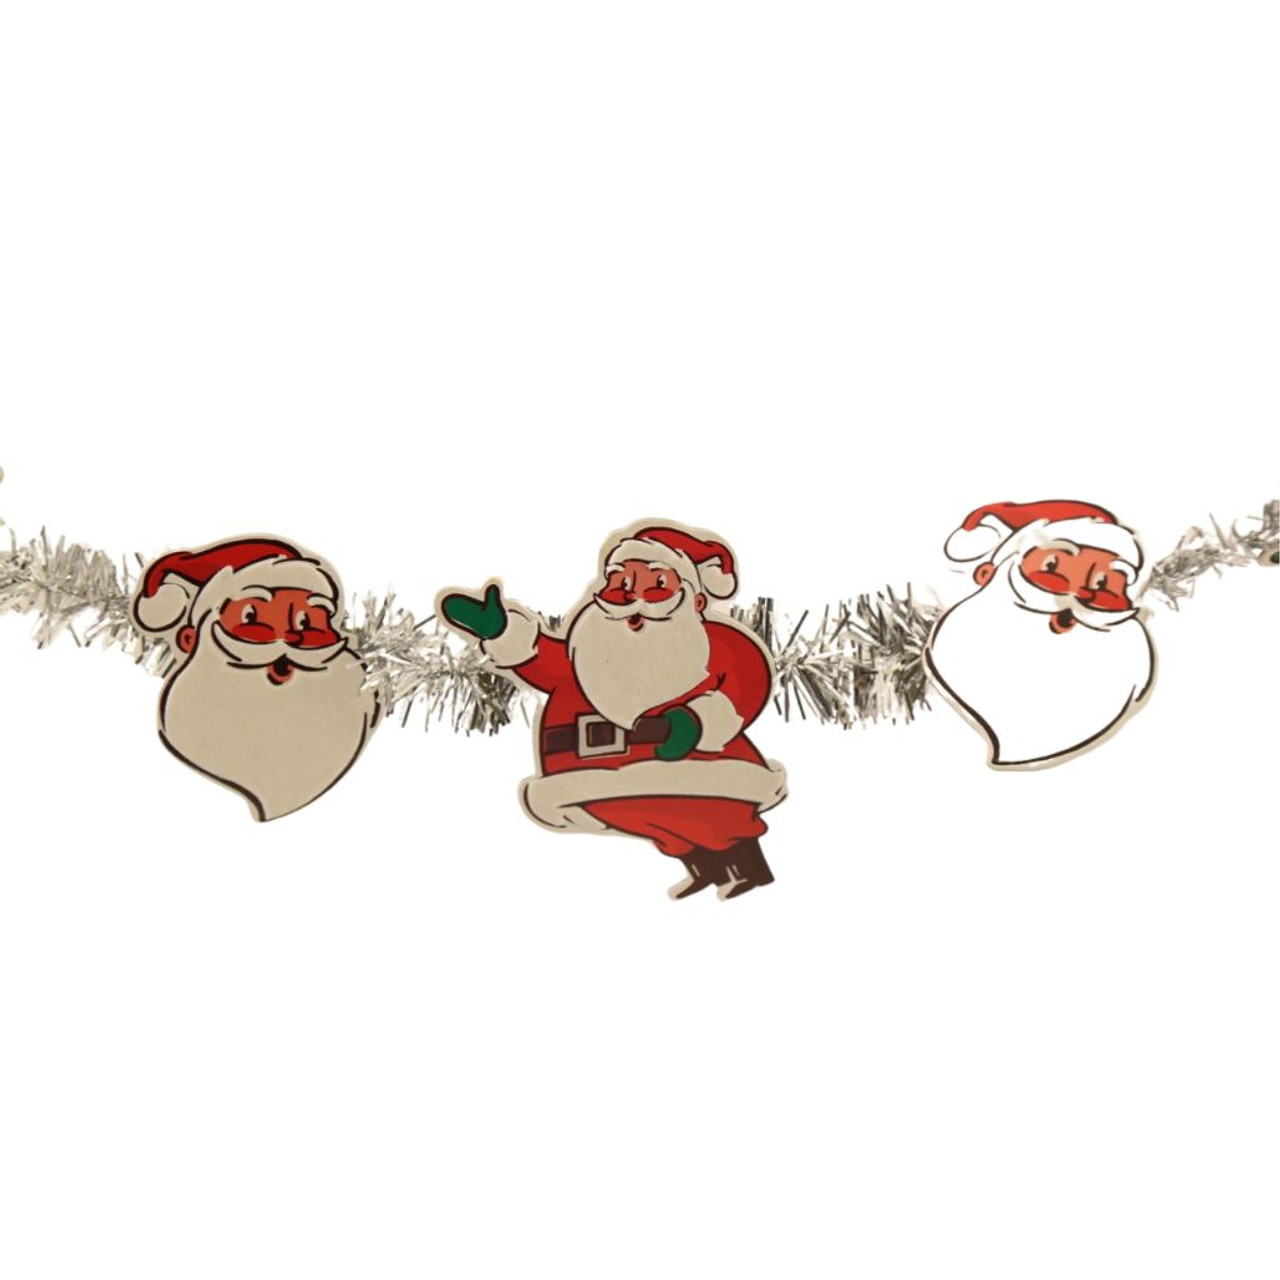 8 Foot Paper Santa Garland - The Christmas Loft